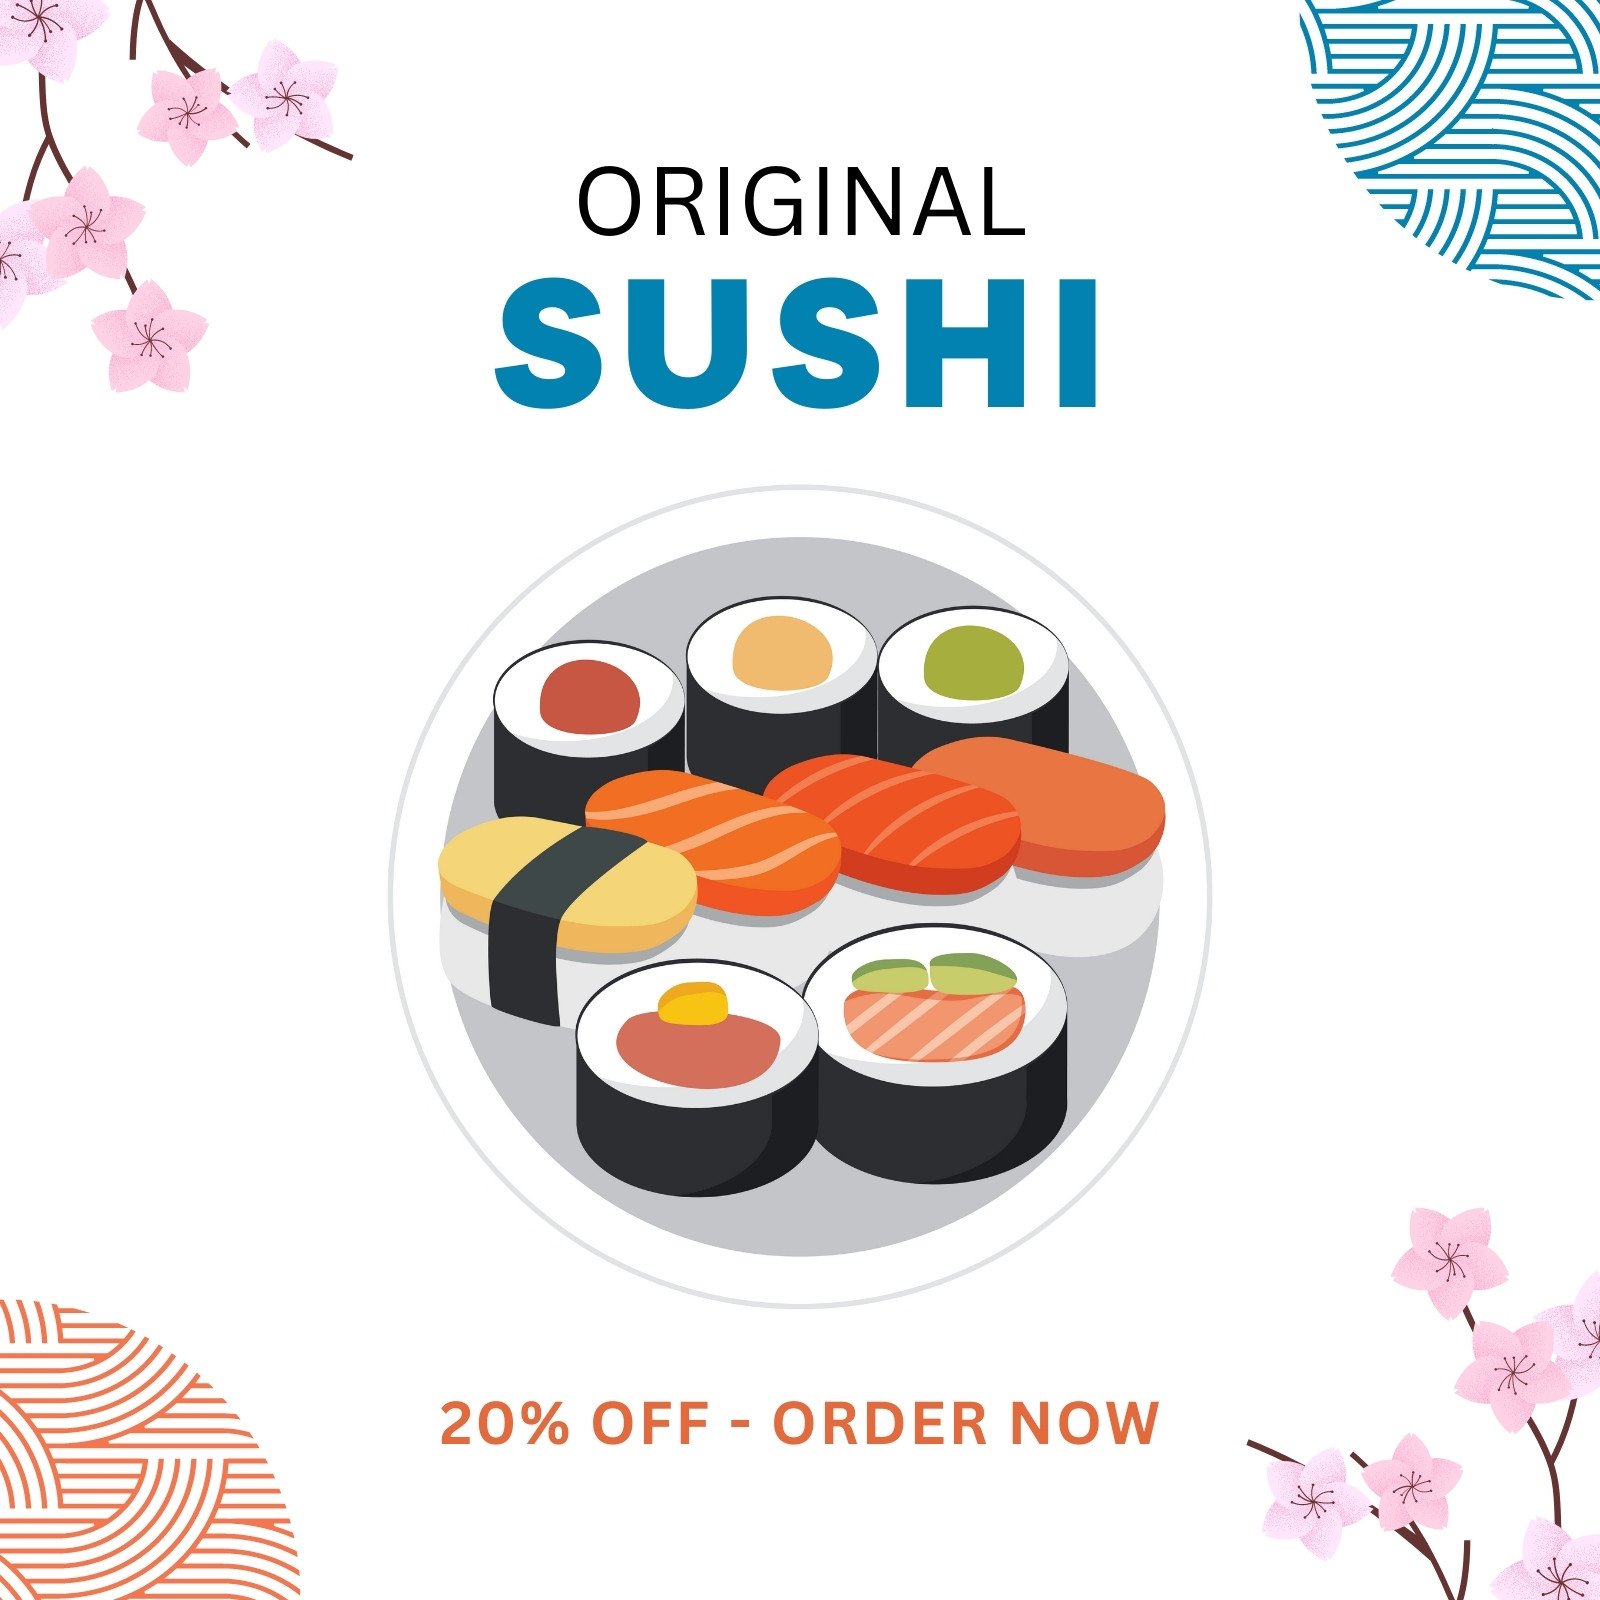 Sushi Rolls Recipe: Cùng điểm lại trào lưu ẩm thực \'healthy\' mà từ lâu vẫn được yêu thích nhất, nhất là trong giai đoạn này. Các món ăn Nhật Bản như sushi hay món ăn truyền thống màu sắc tươi sáng, rất nhiều rau củ và dinh dưỡng đang được ưa chuộng, và hơn thế nữa, sushi được nhiều người lựa chọn vì vừa ngon, vừa tiện lợi. Đến ngay tại hình ảnh này để khám phá thêm về các công thức sushi hấp dẫn và bí quyết làm sushi hoàn hảo nhé!